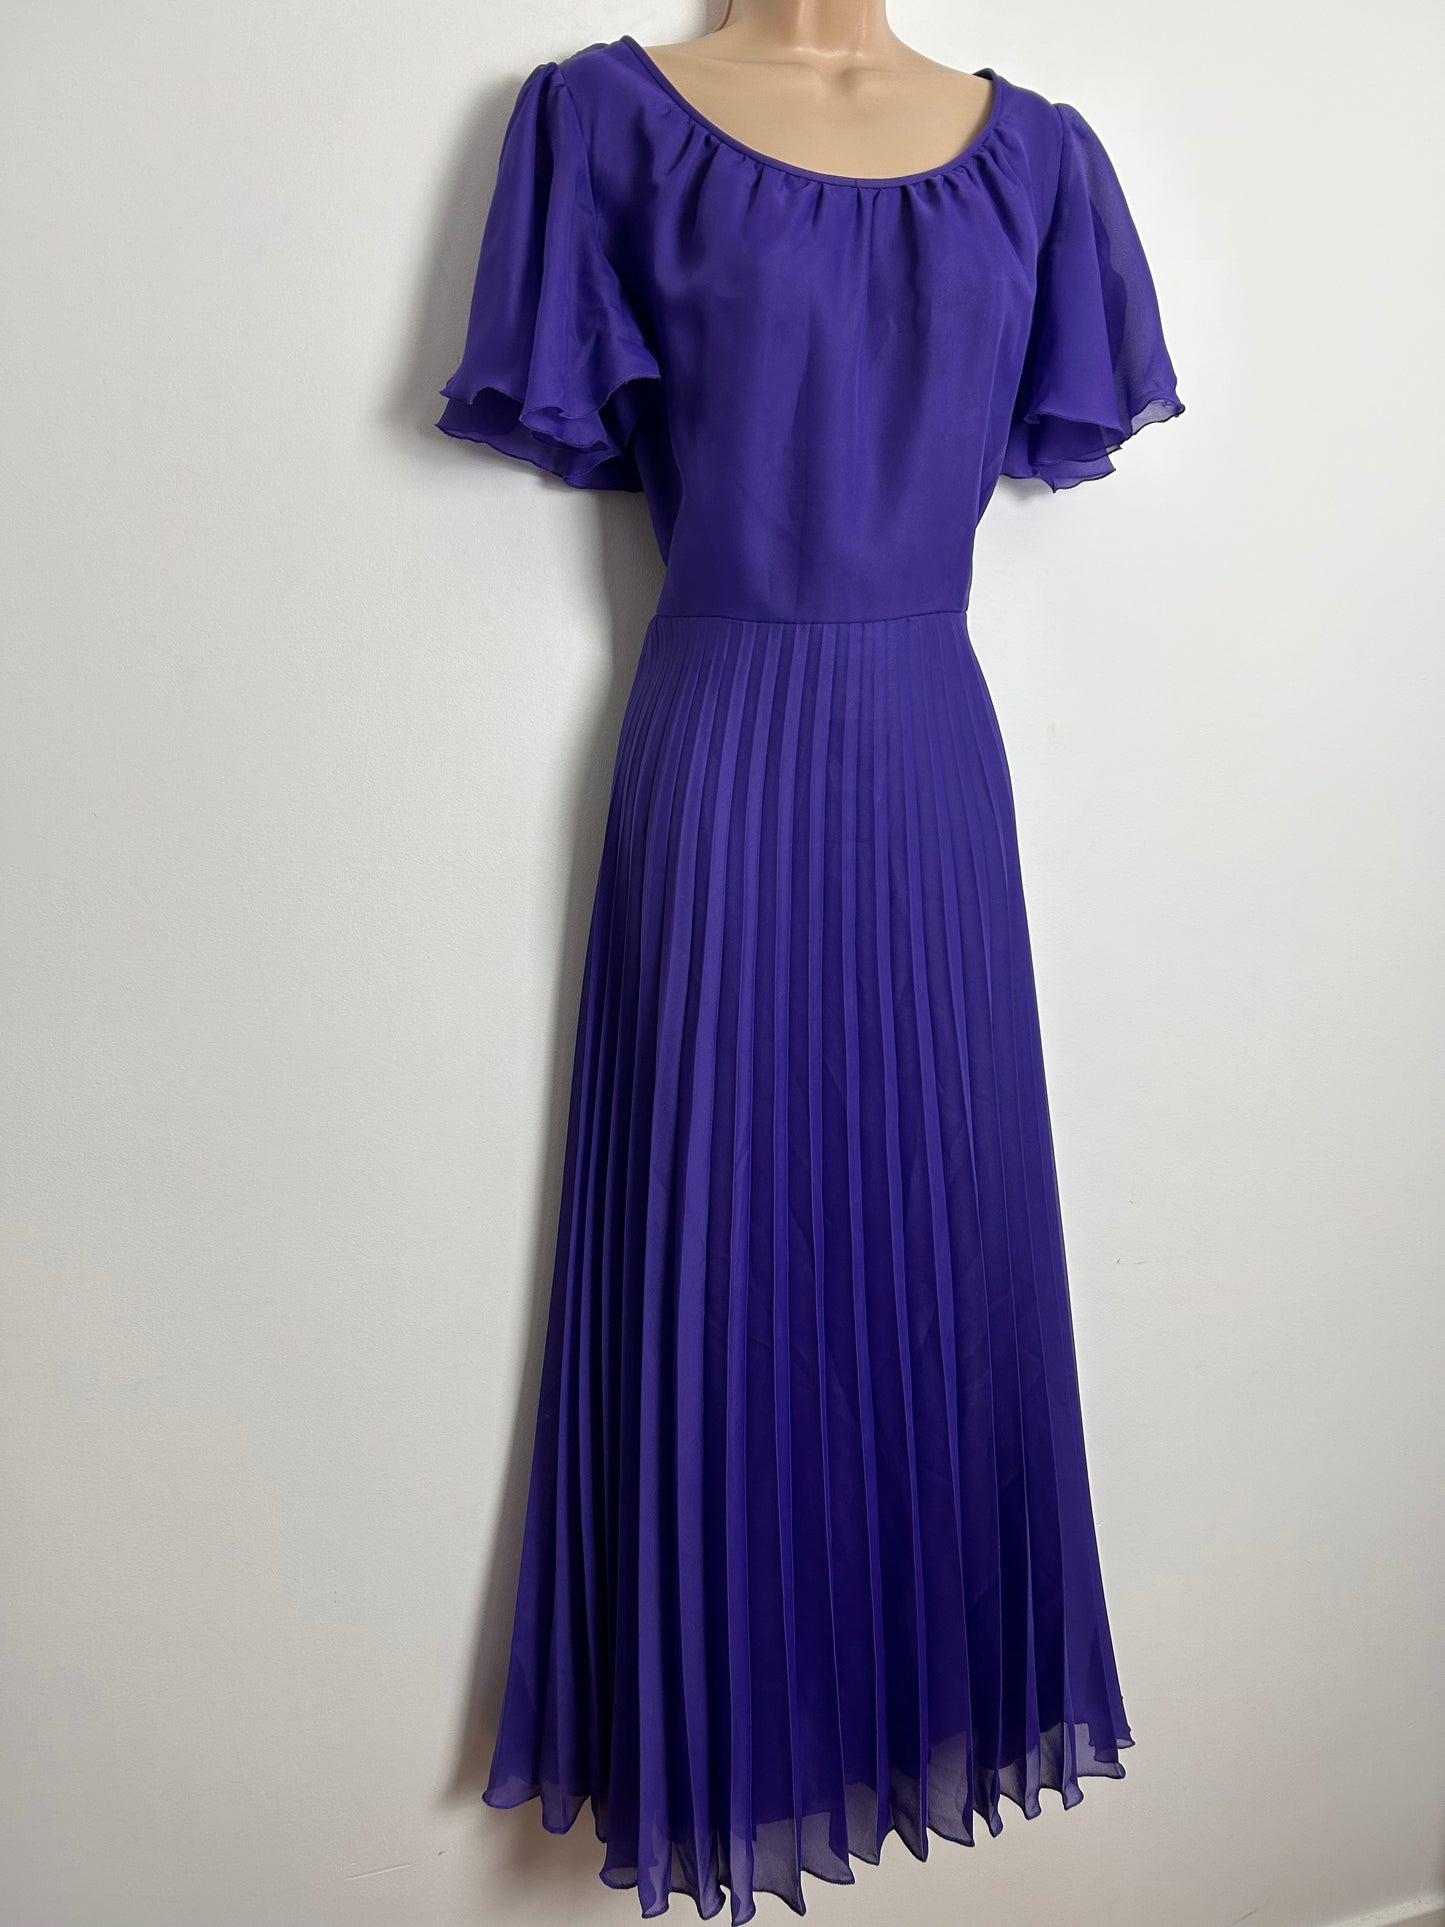 Vintage 1970s UK Size 8-10 Purple Chiffon Short Flared Sleeve Pleated Boho Maxi Dress